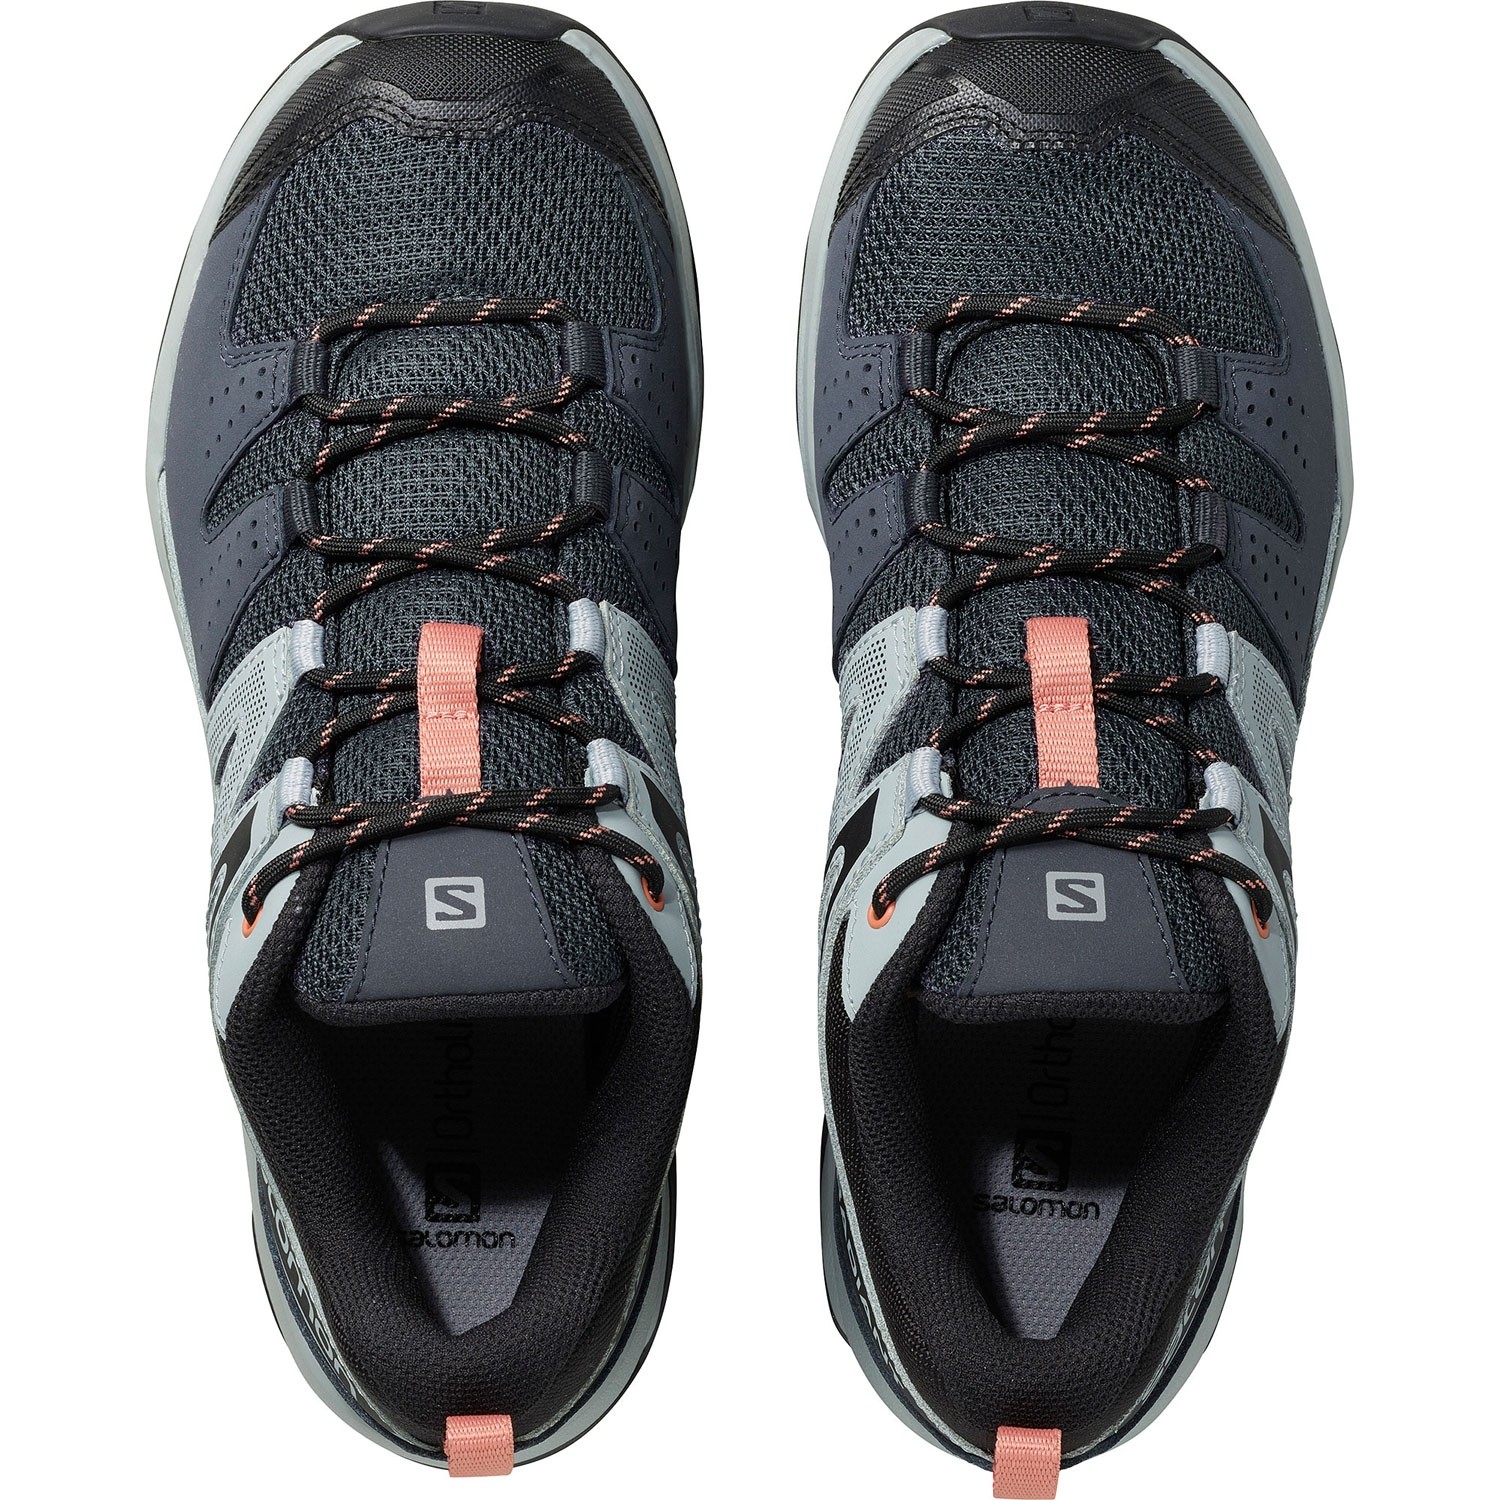 Salomon X Radiant Women's Hiking Shoes - Ebony/Quarry/Tawny Orange